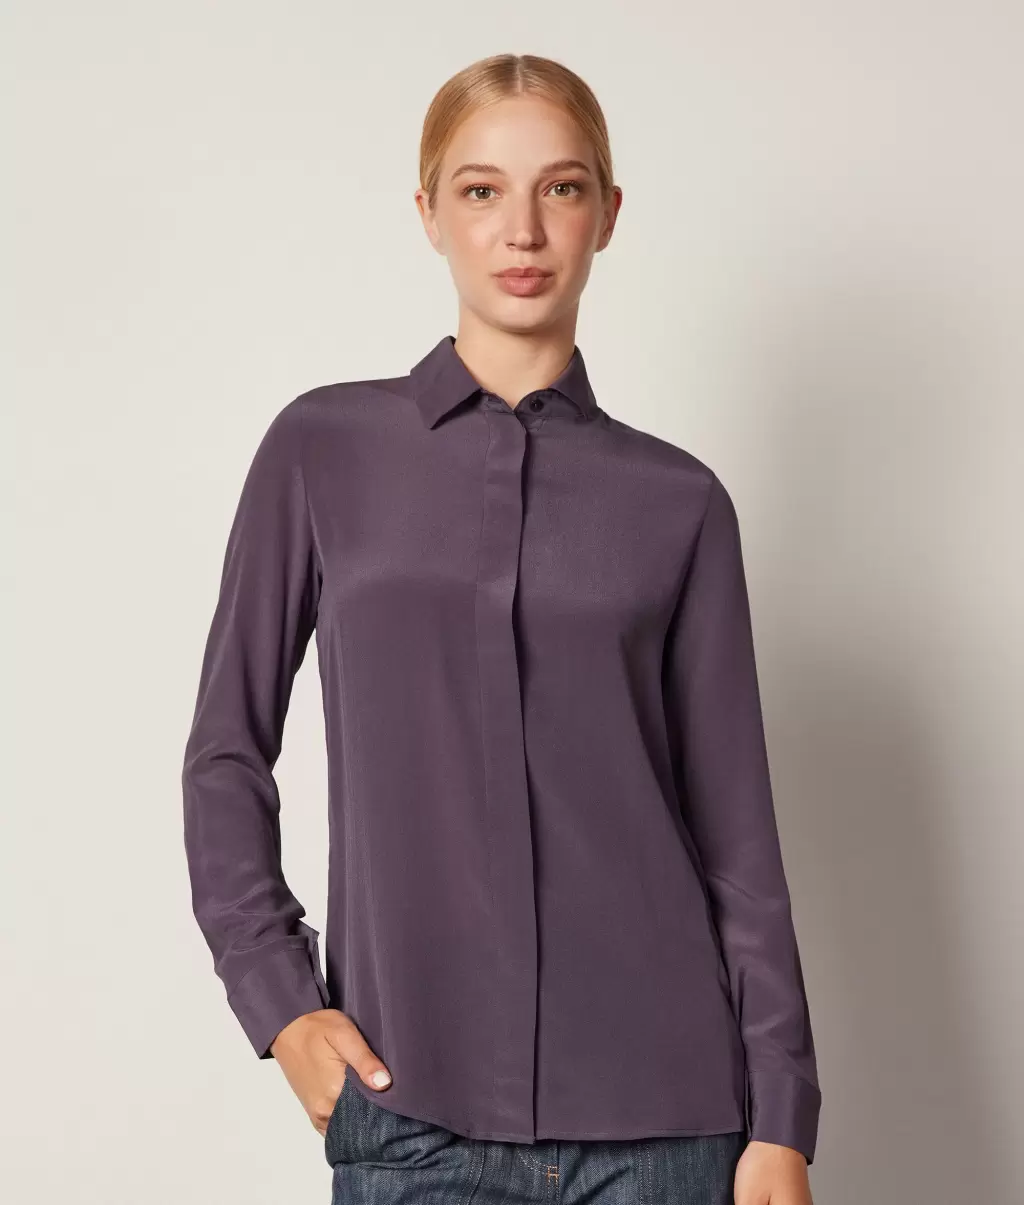 Falconeri Camisas E Blusas Violet Senhora Camisa De Seda Com Colarinho - 1